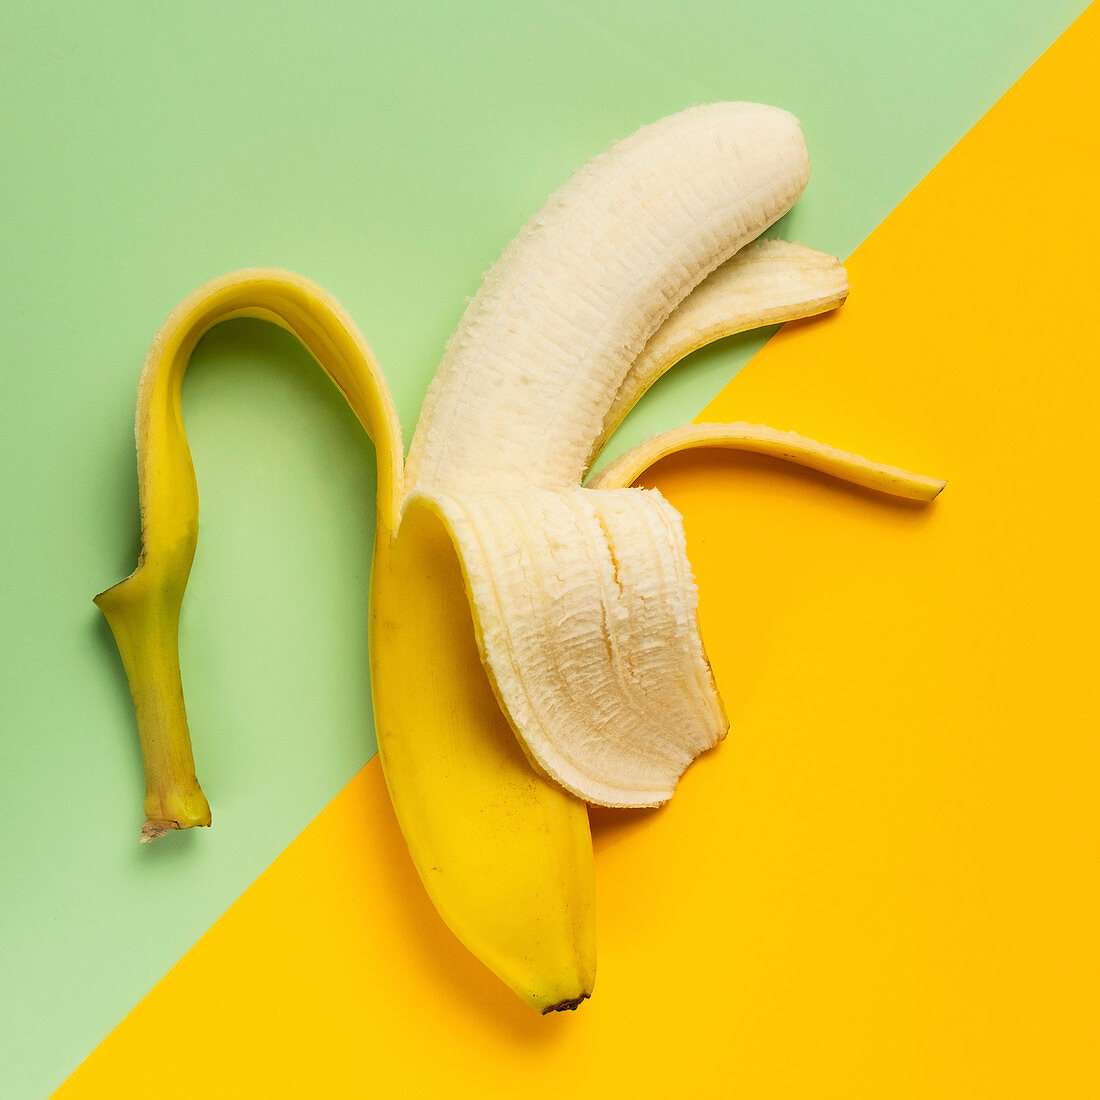 Halb geschälte Banane auf grünem und gelbem Hintergrund